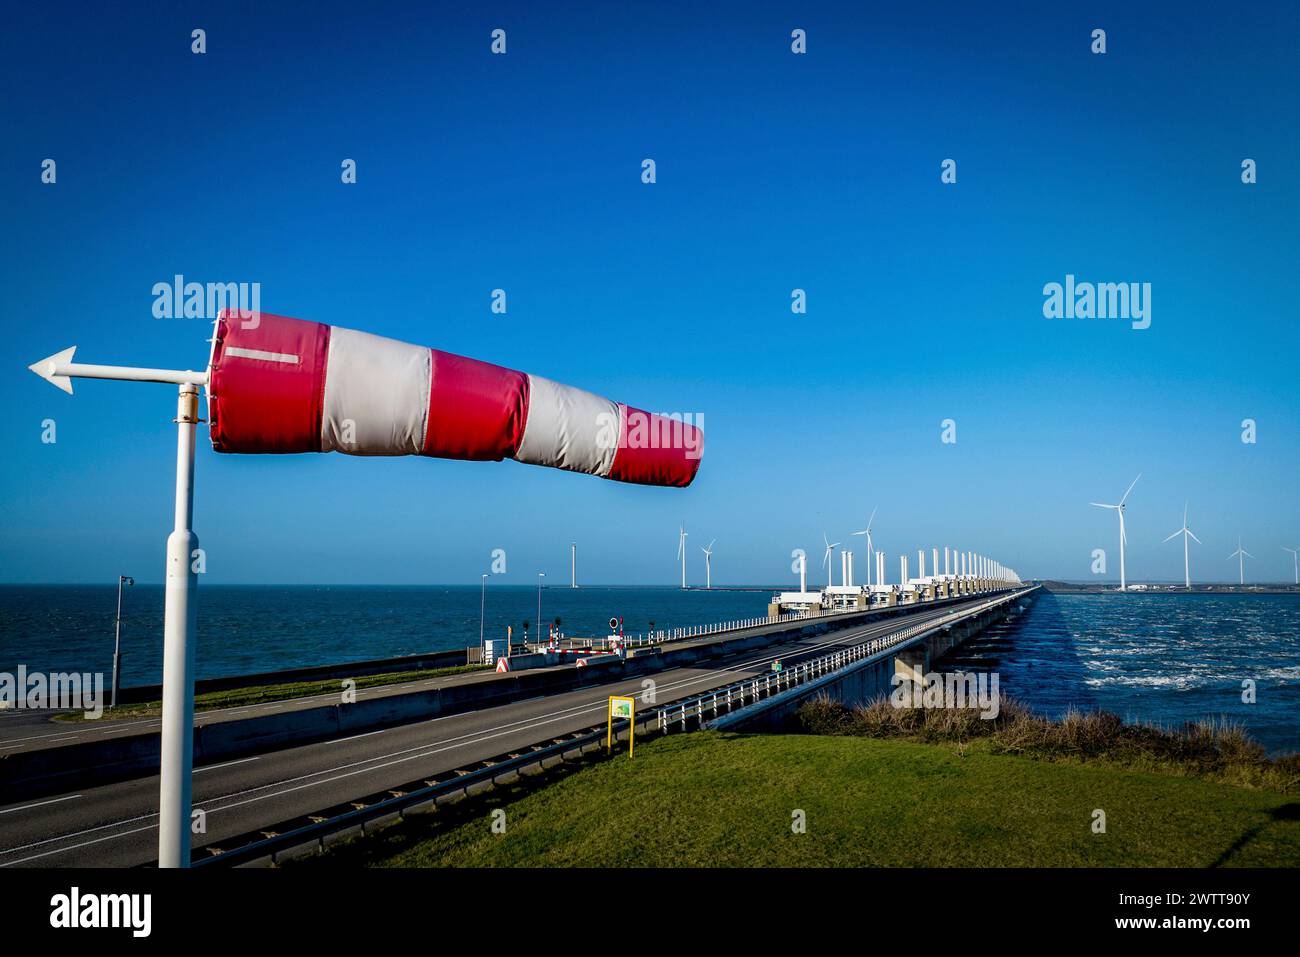 Una calza a vento fluttua vibrante nella brezza accanto a una strada costiera e alle turbine eoliche. Foto Stock